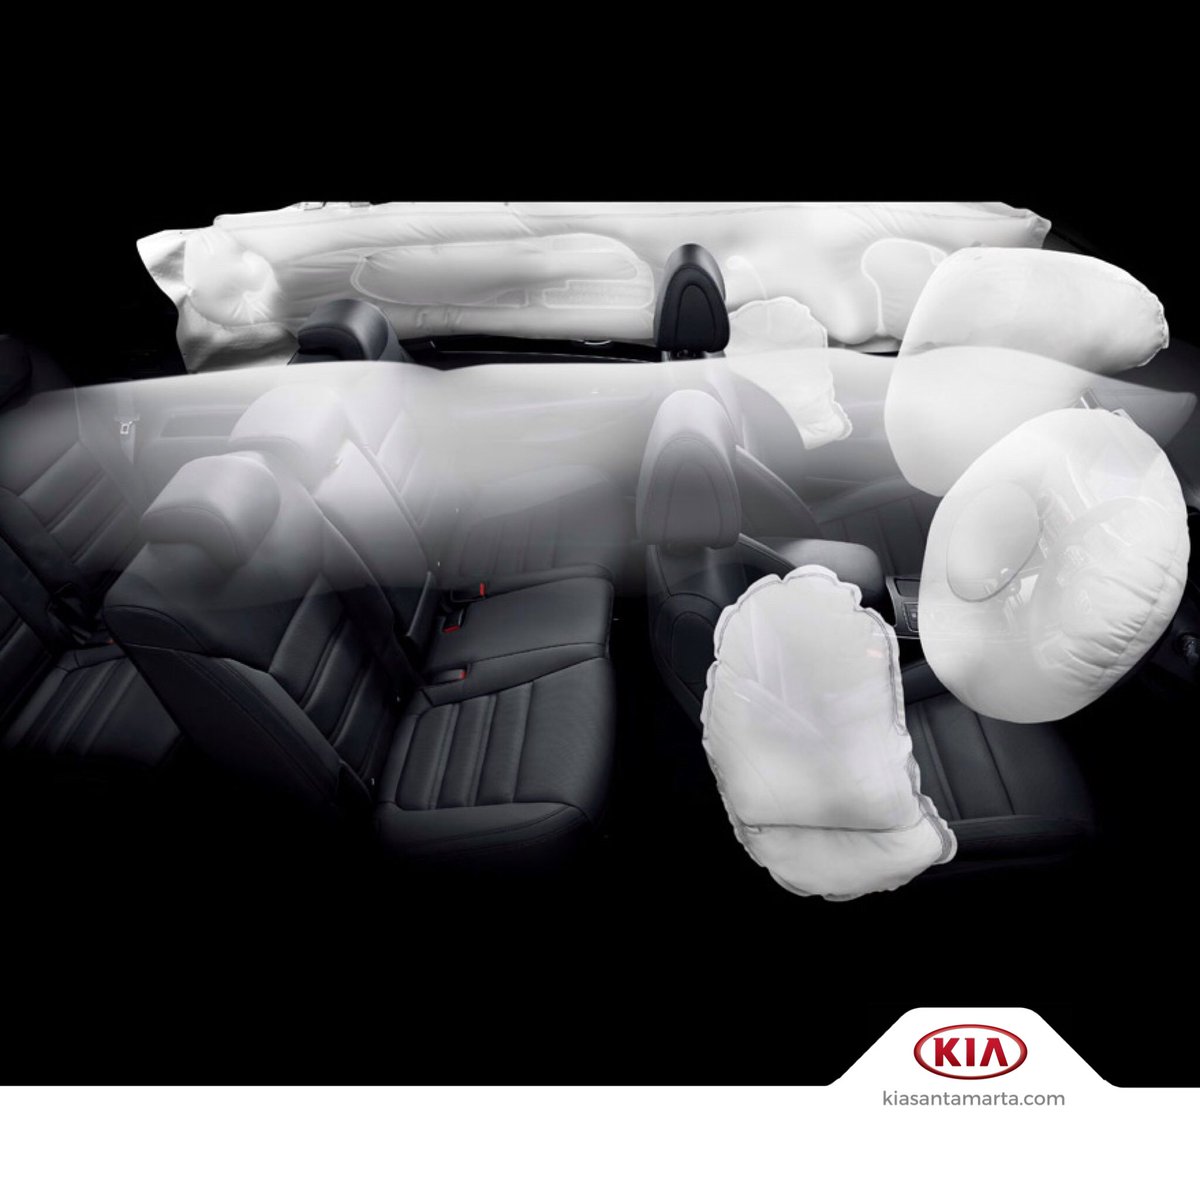 Как проверить подушки безопасности при покупке автомобиля: Как проверить подушки безопасности при покупке автомобиля